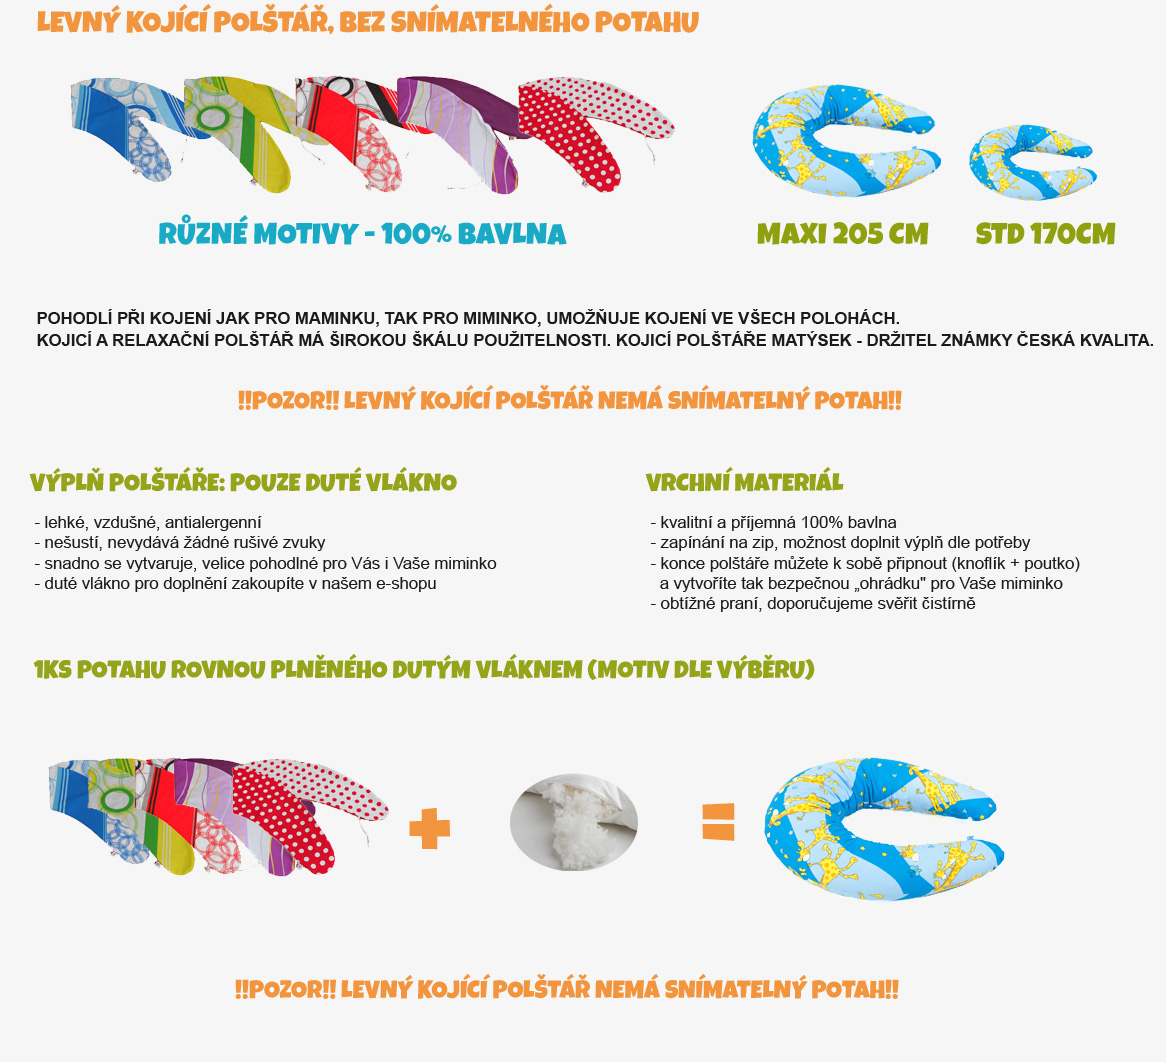 Lacný dojčiaci vankúš Standard HNĚDÝ jednobarevný 100% bavlna